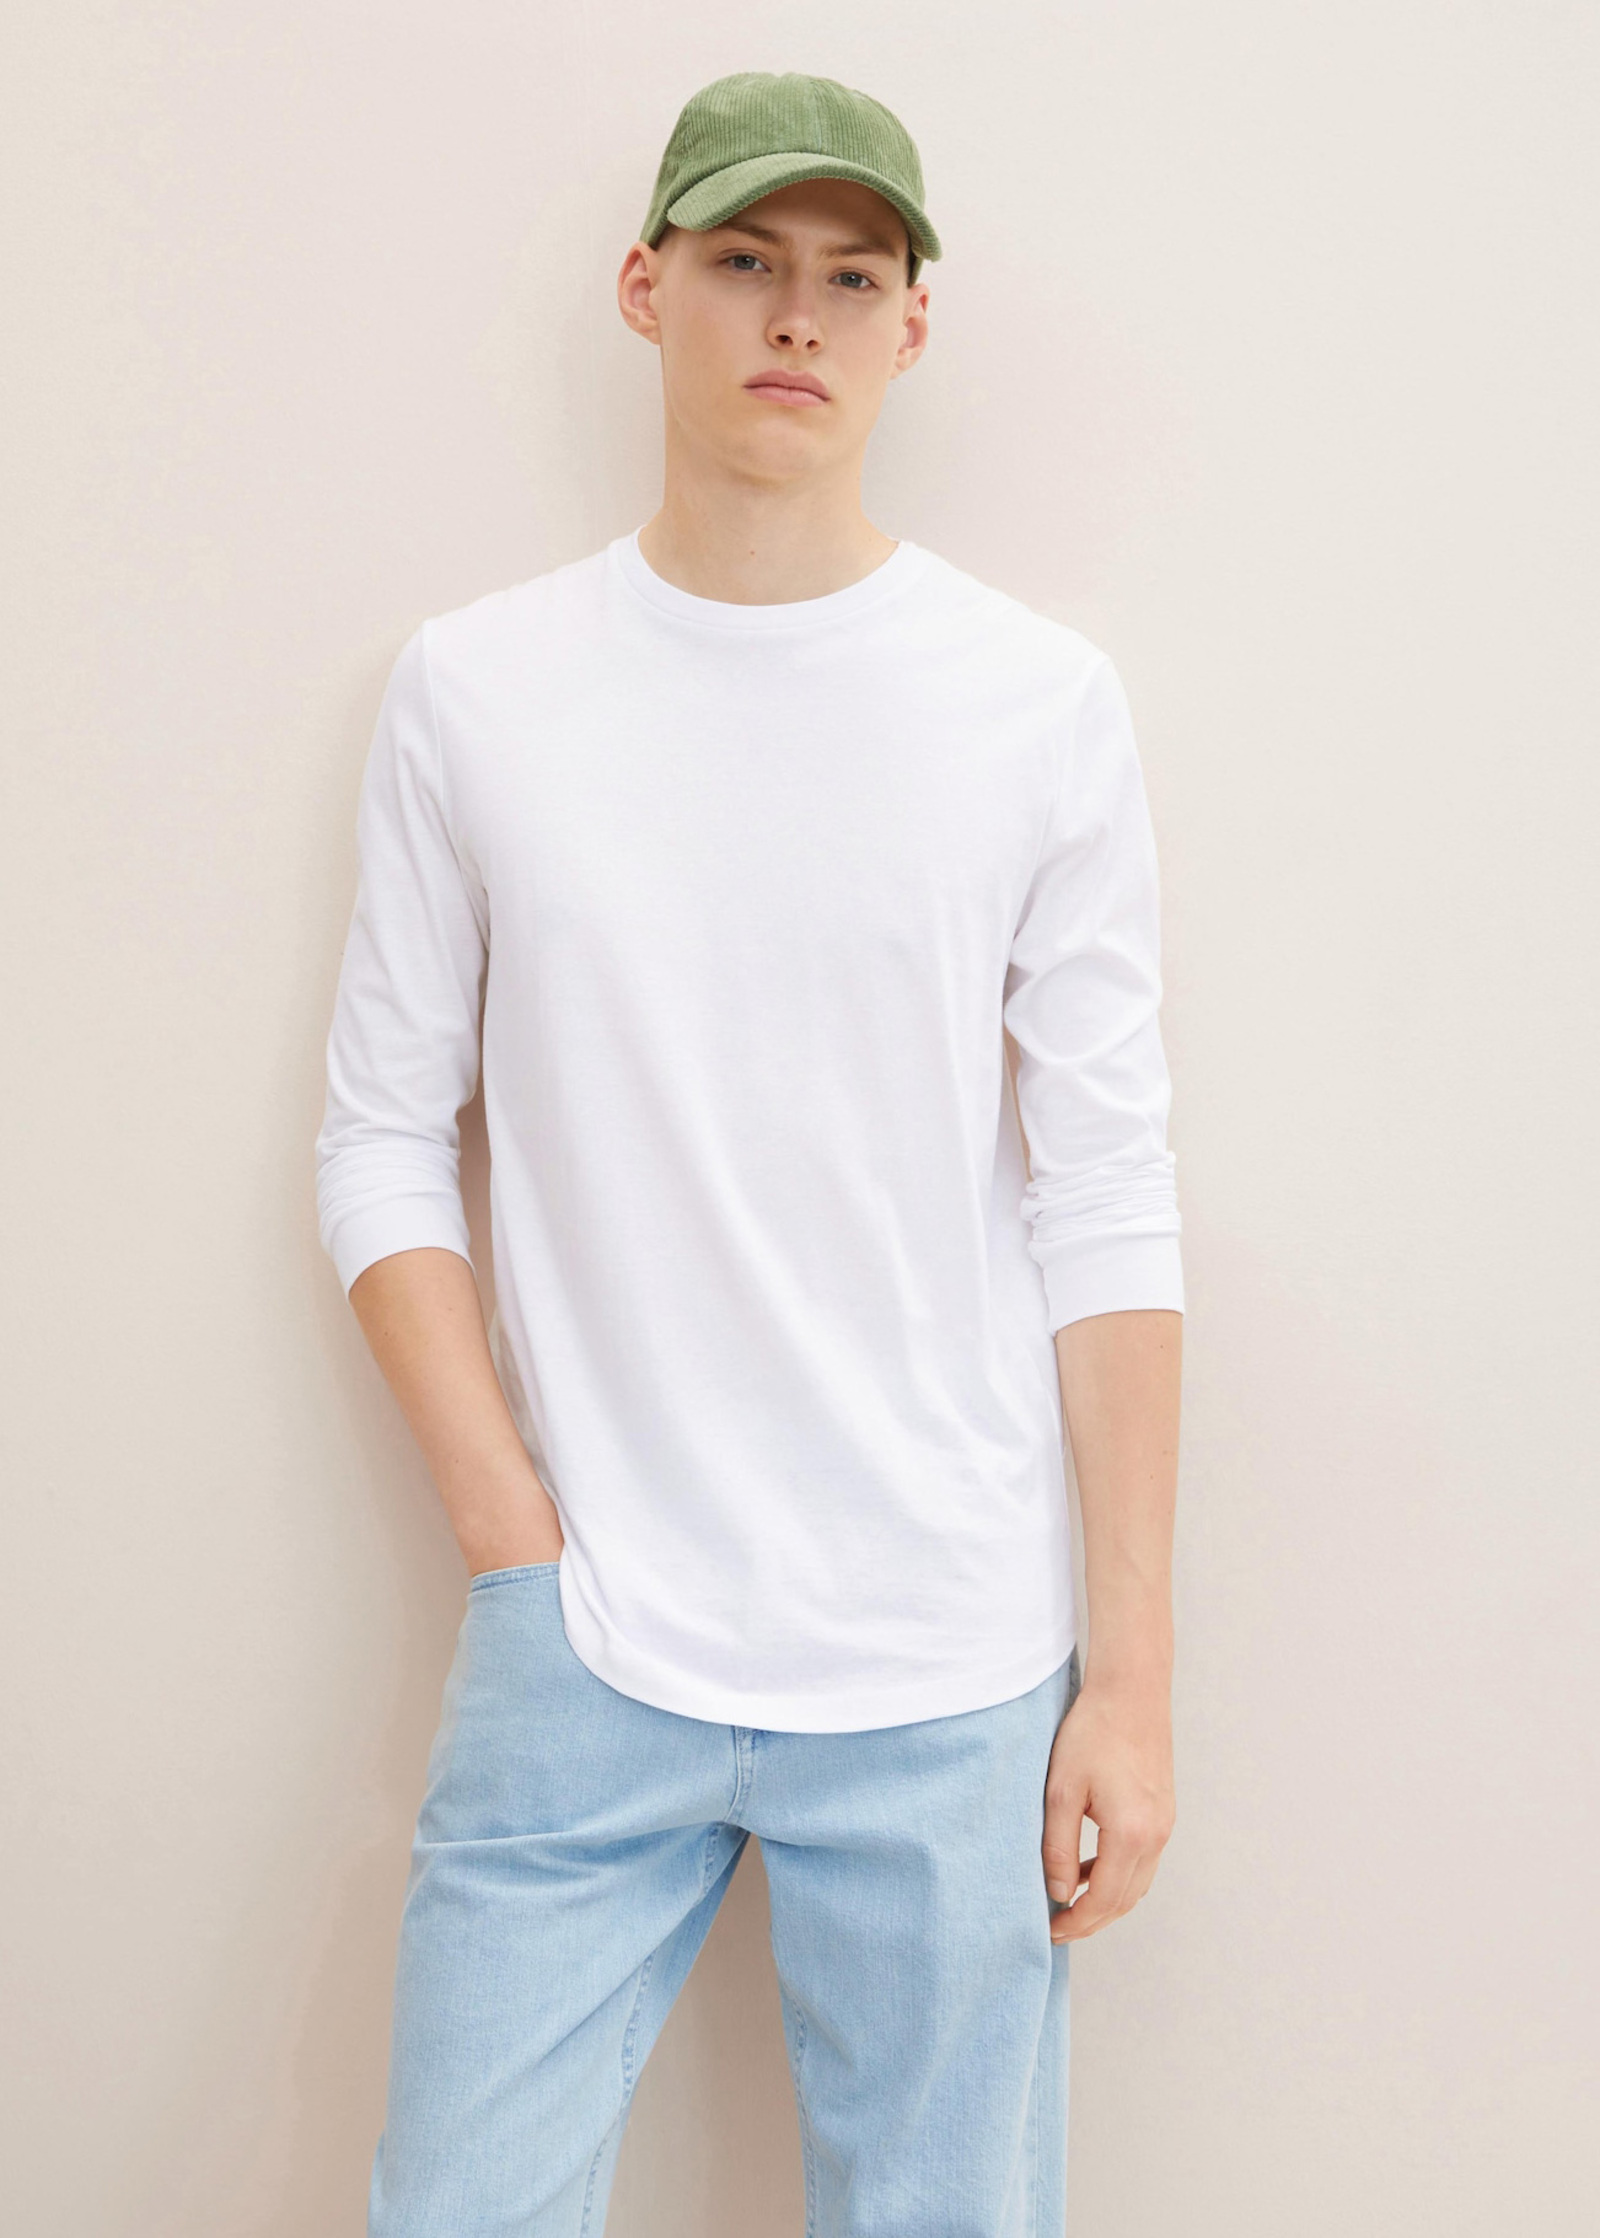 L - Long-sleeved Basic Shirt Tailor® Size White Denim Tom